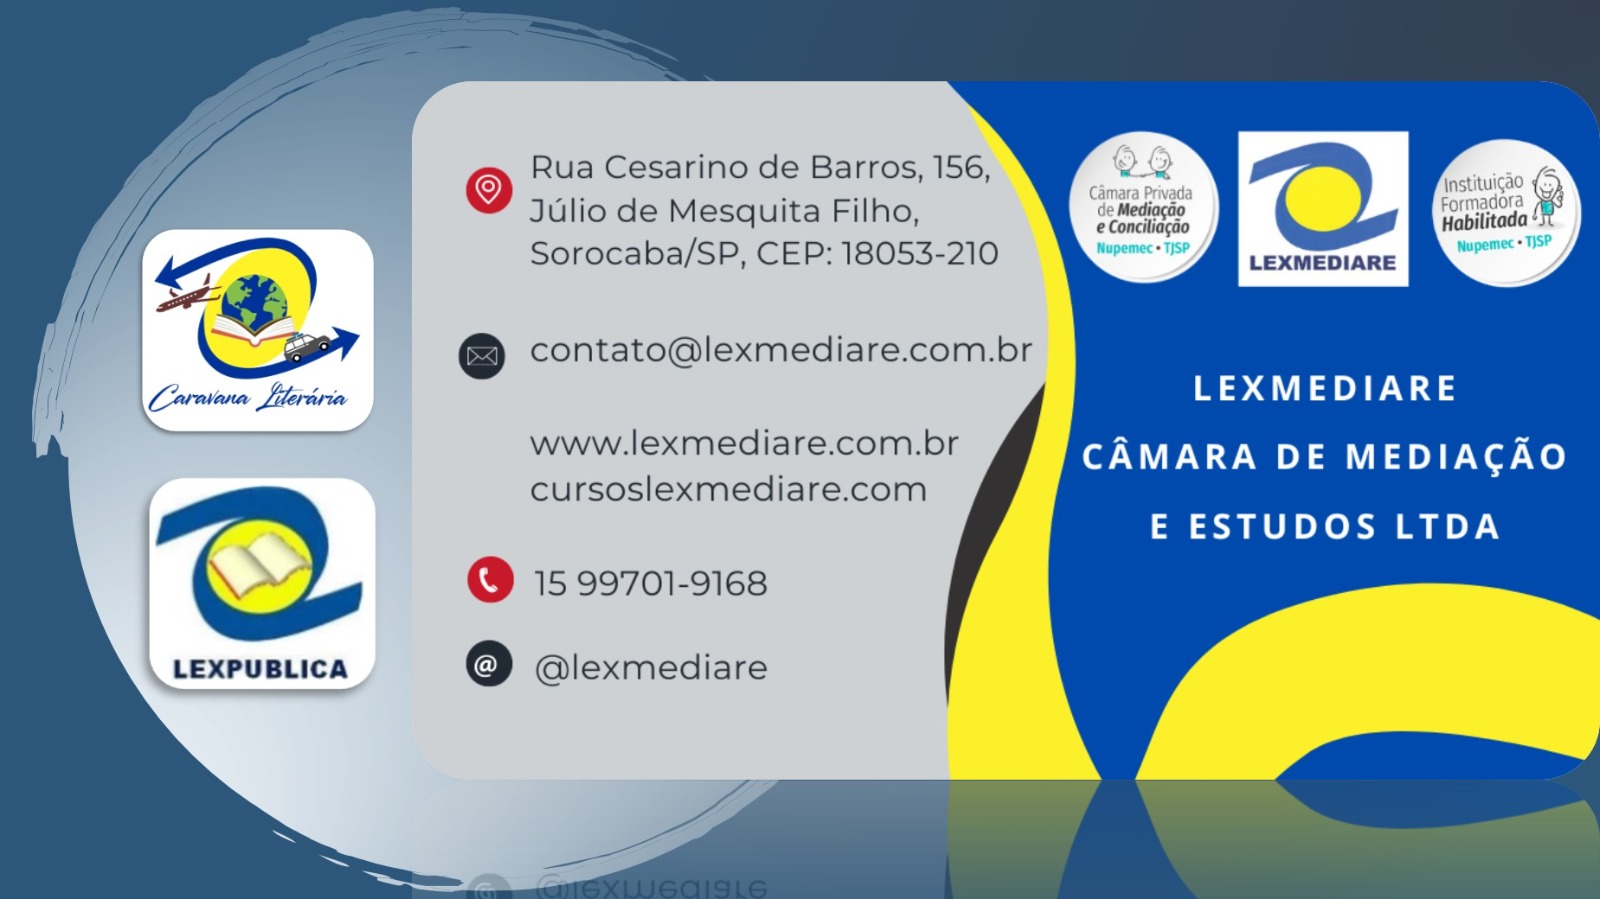 Cartaz da Lexmediare - Câmara de Mediação e Estudos Ltda.